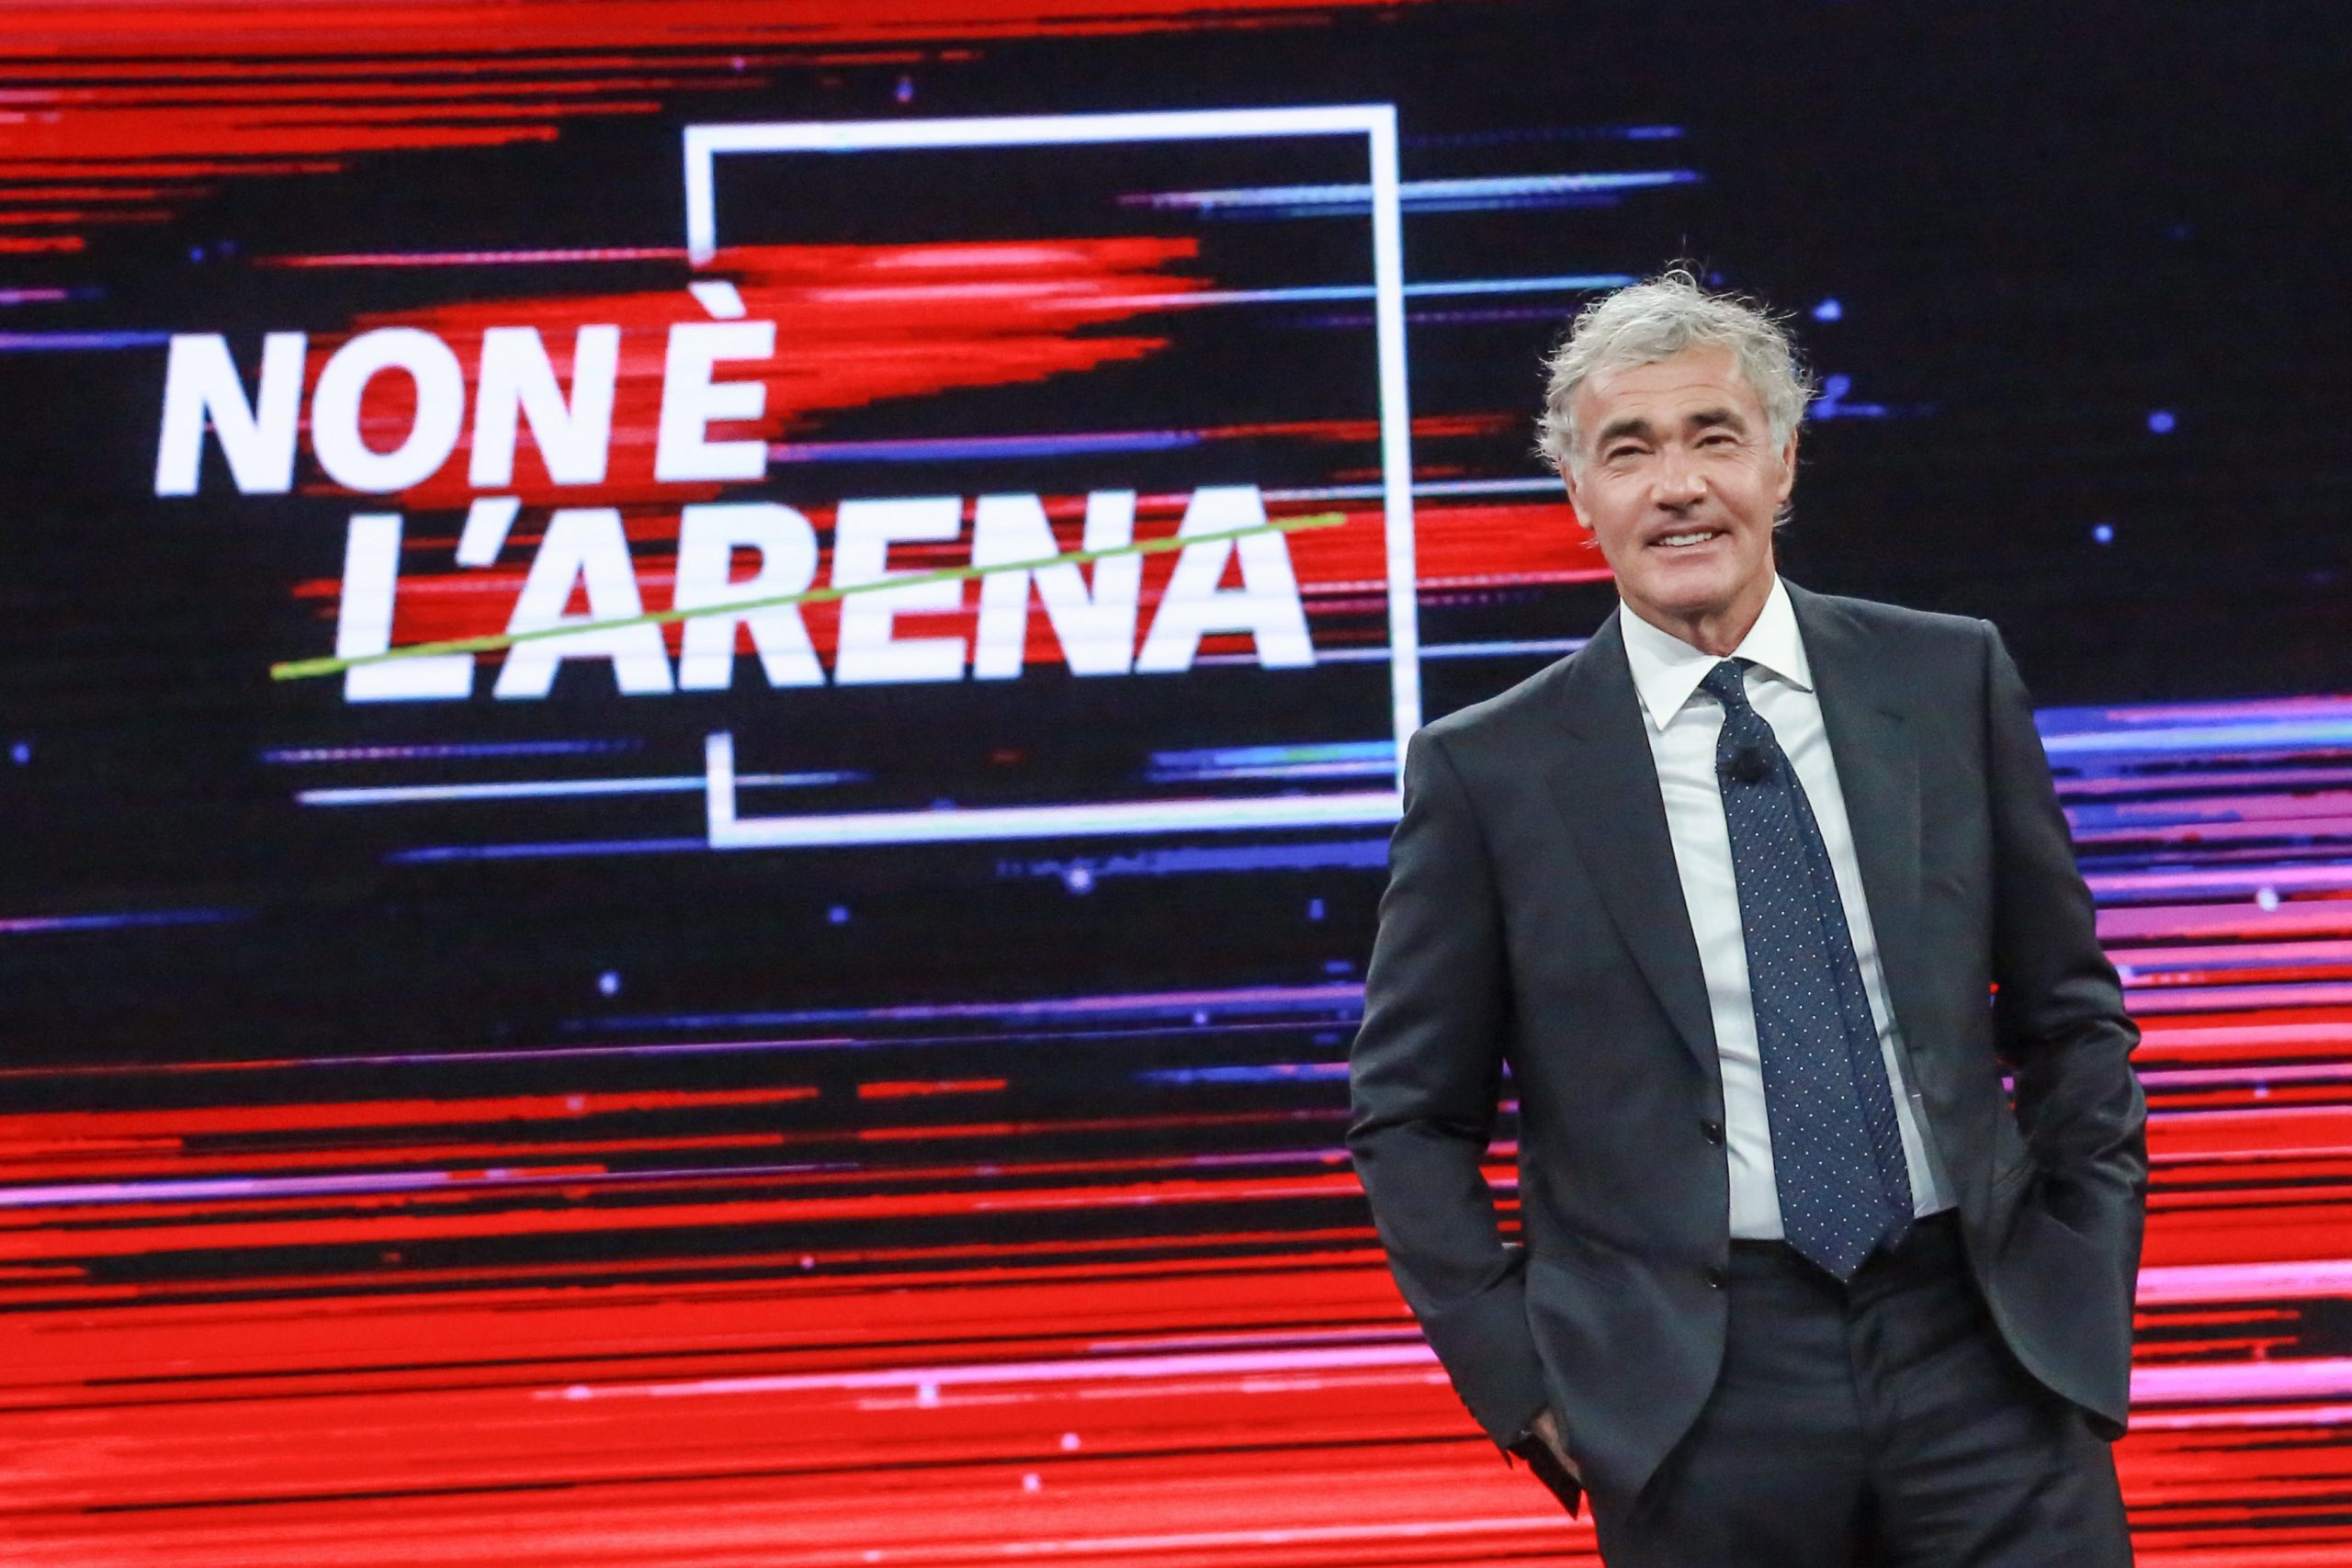 Non è l'Arena, Giletti si confronta con Cacciari e Orsini: "Giusto ospitare opinionisti filorussi nei talk show?"